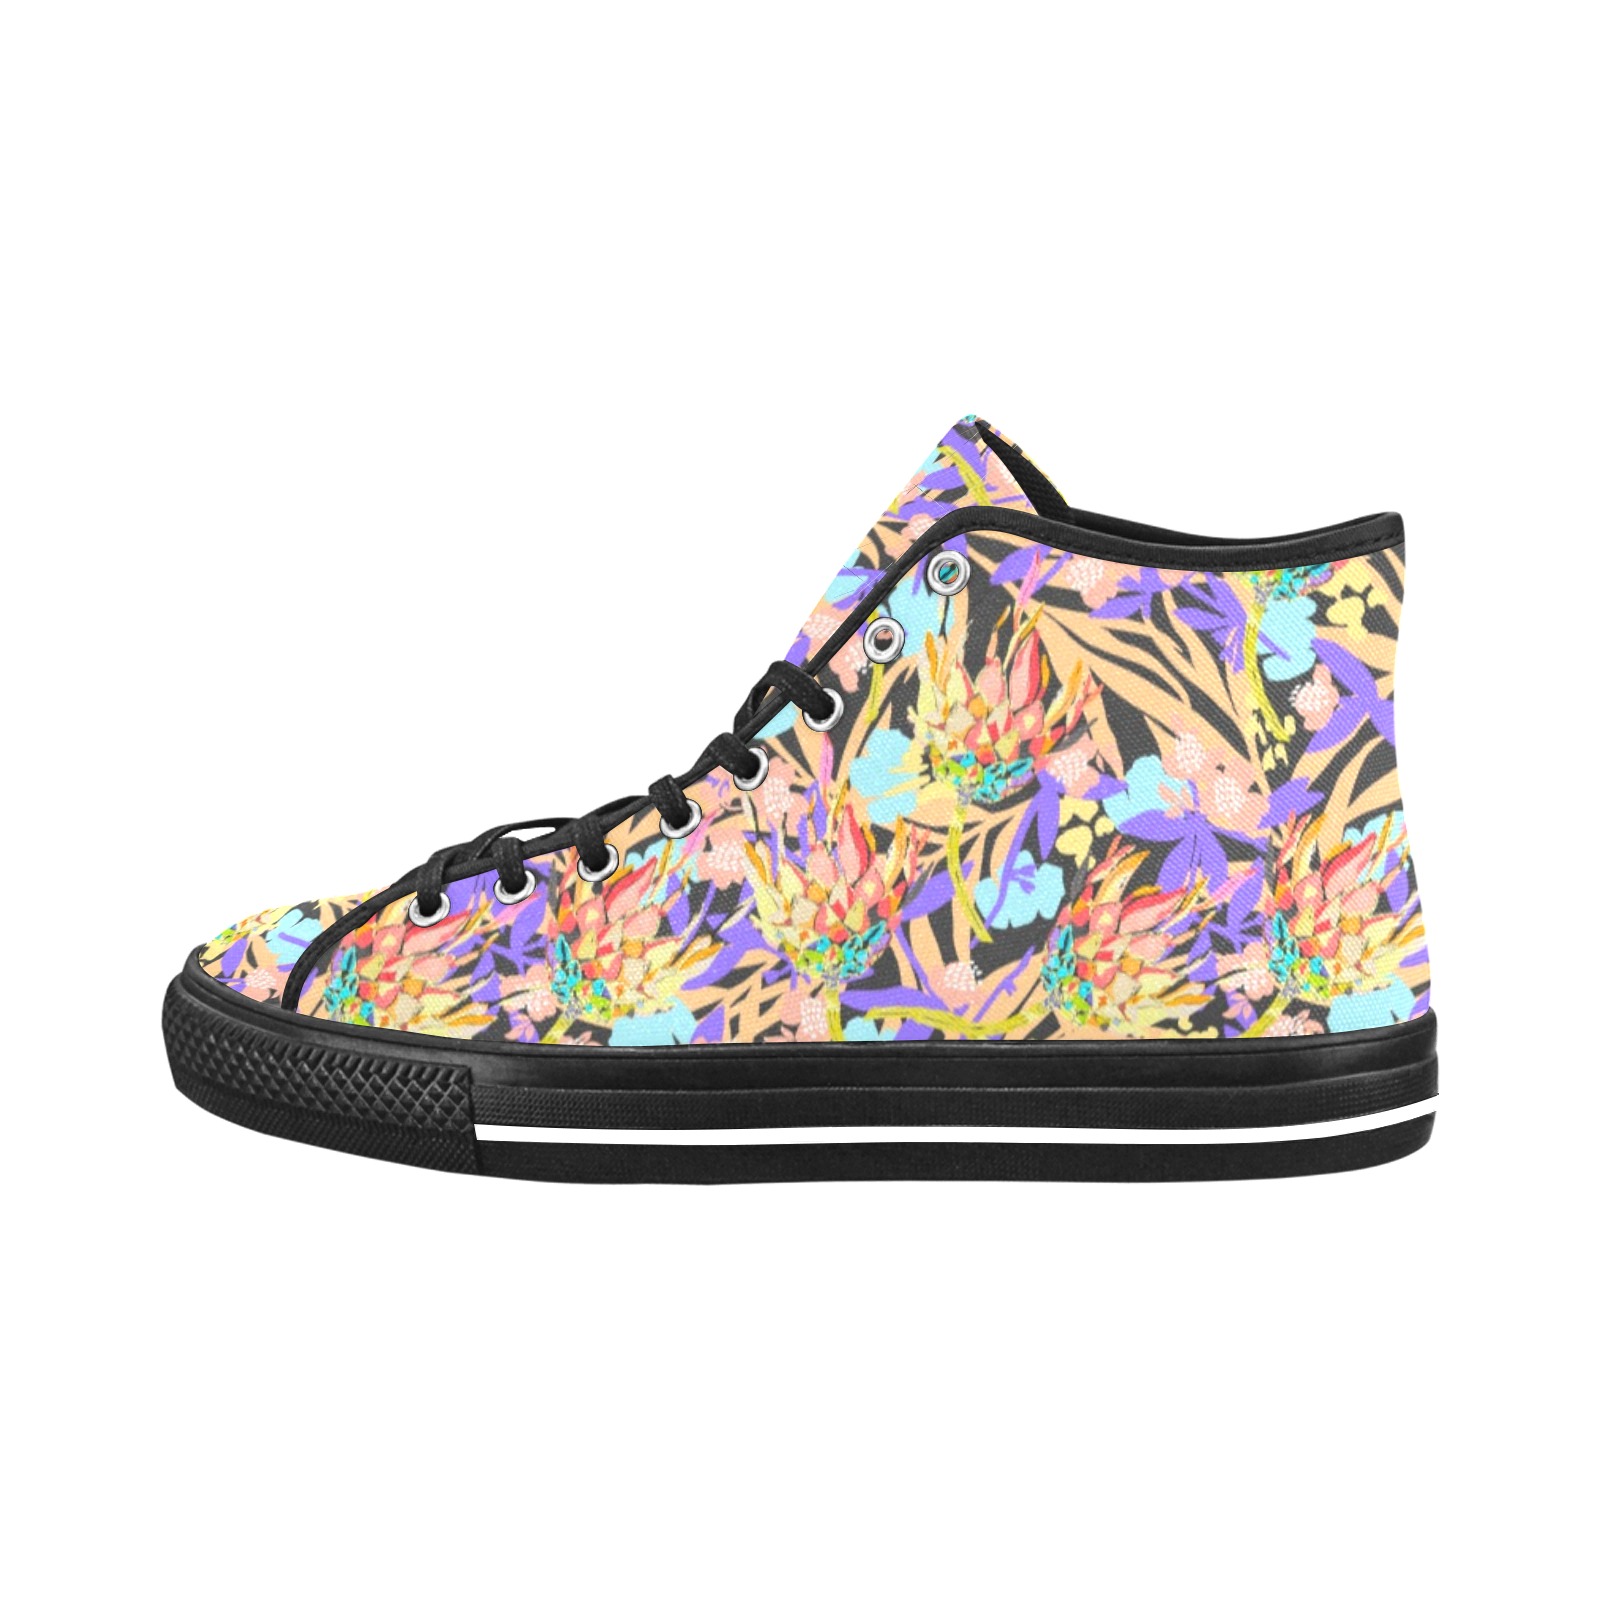 Modern floral boho vibrant Vancouver H Women's Canvas Shoes (1013-1)